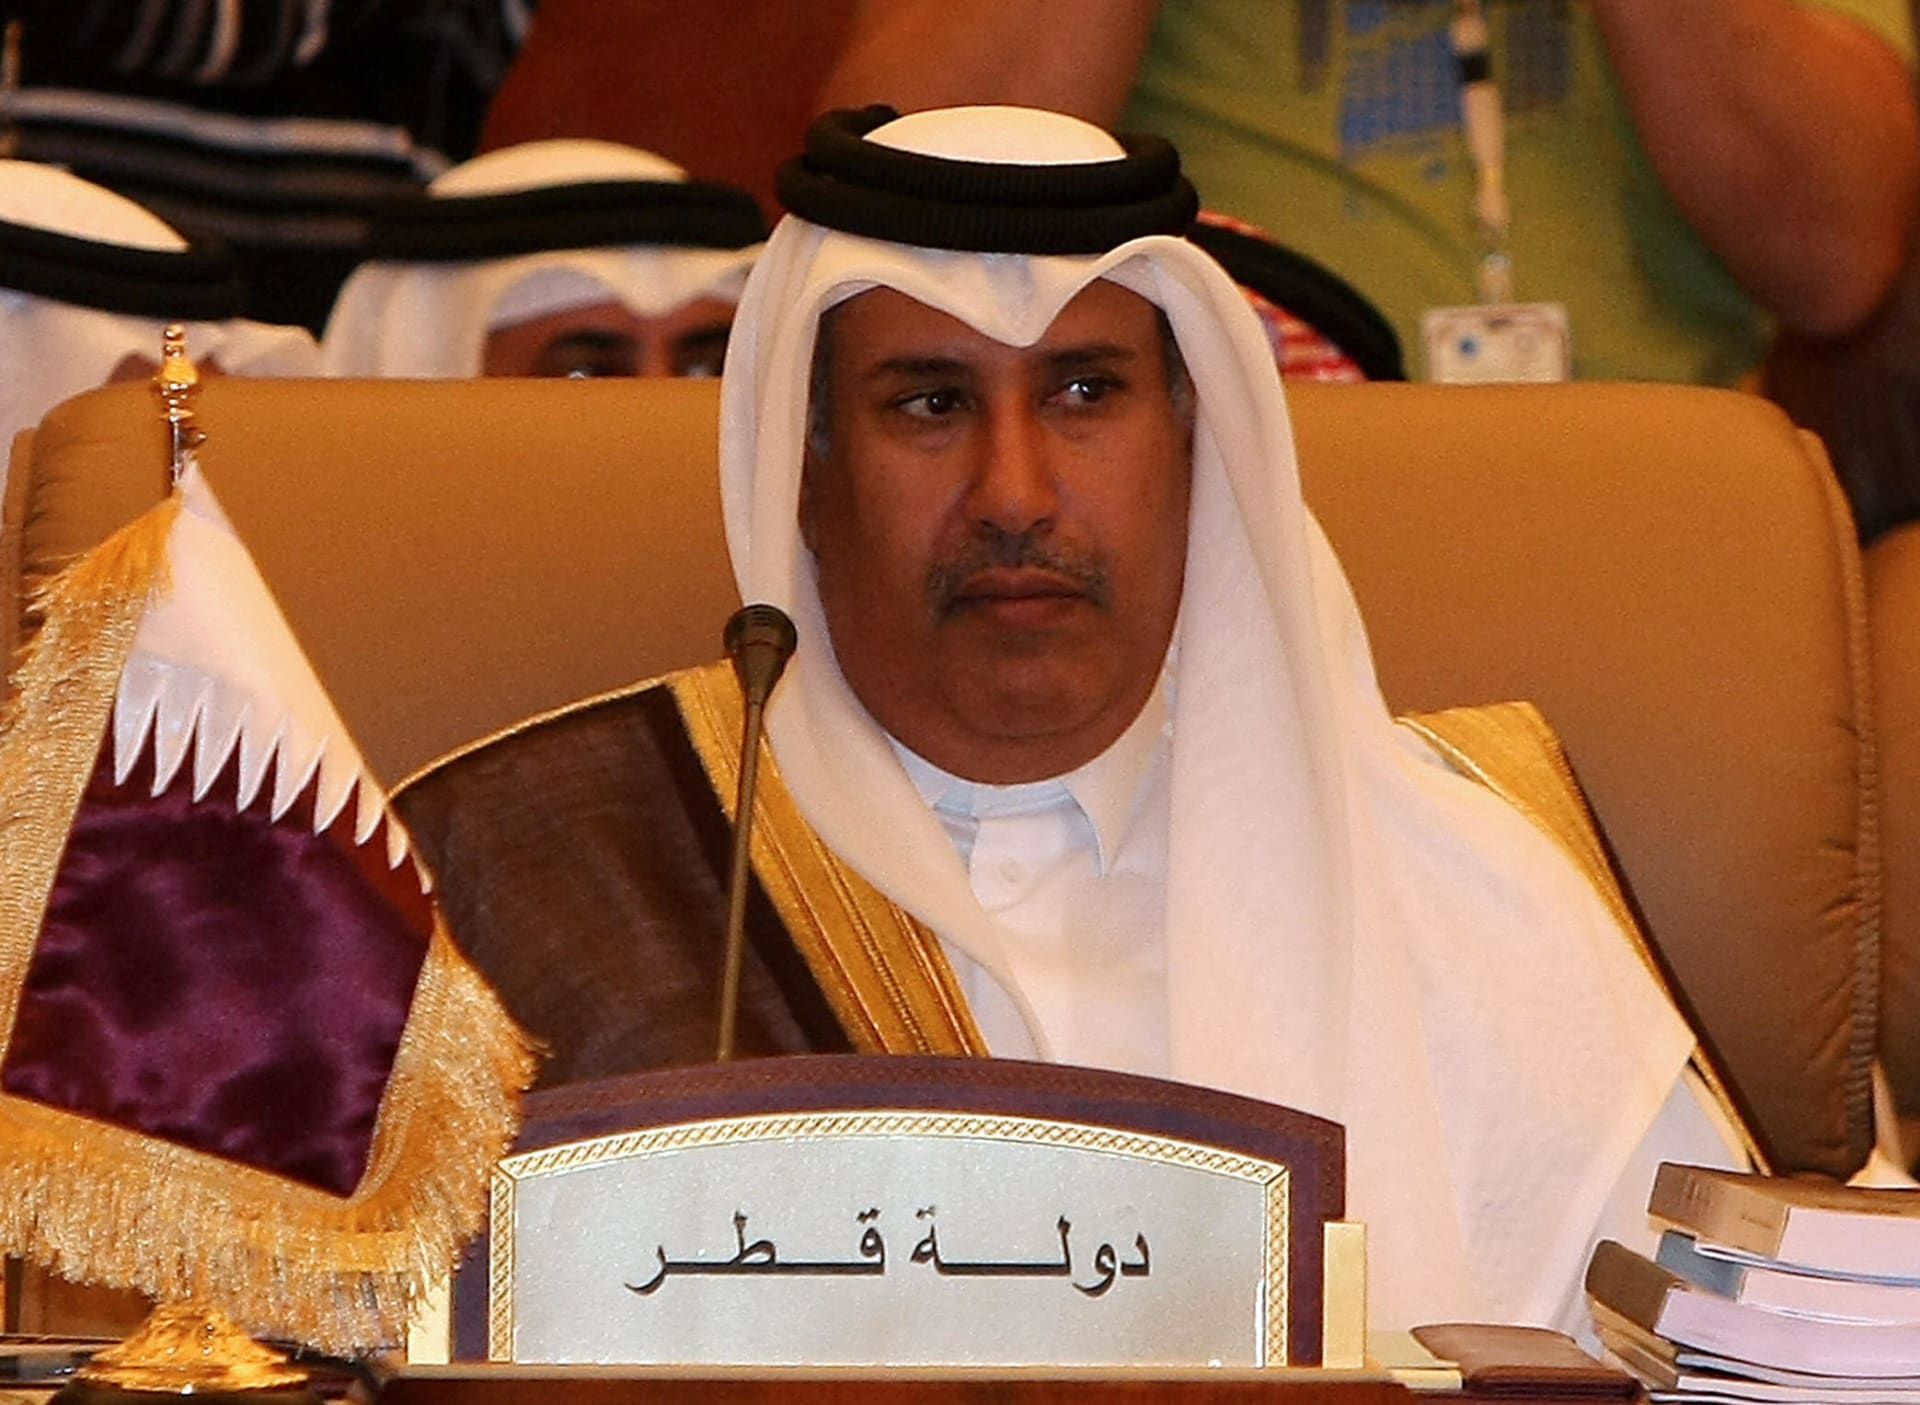 البحرين تحقق في مكالمة منسوبة لحمد بن جاسم مع قيادي بجمعية الوفاق